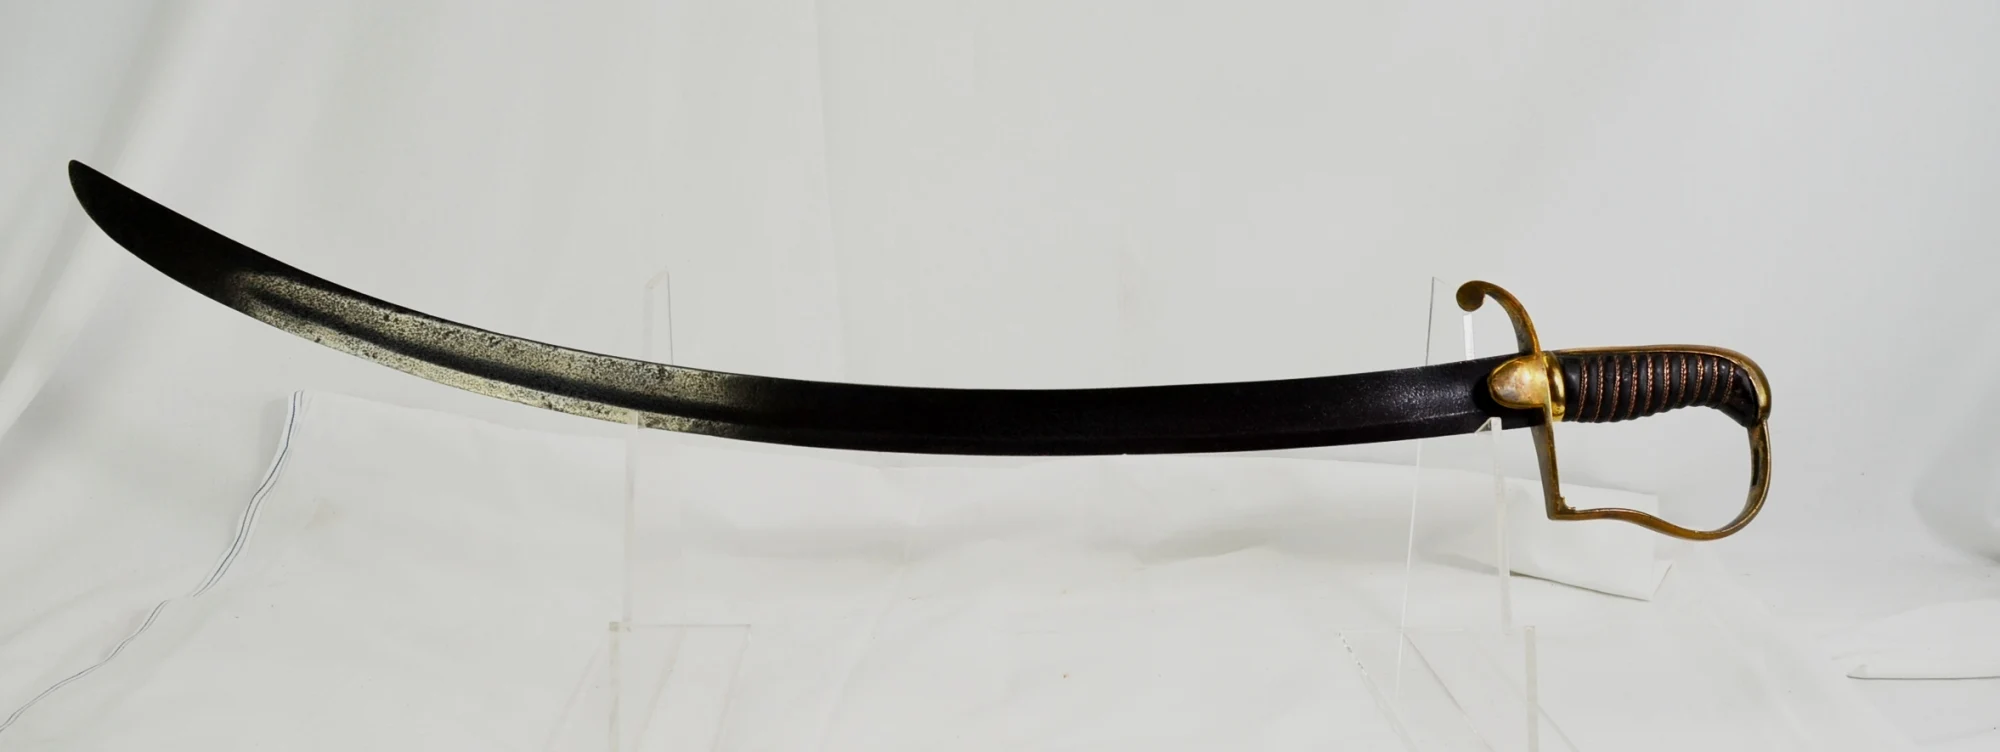 著名的1796型骑兵军刀